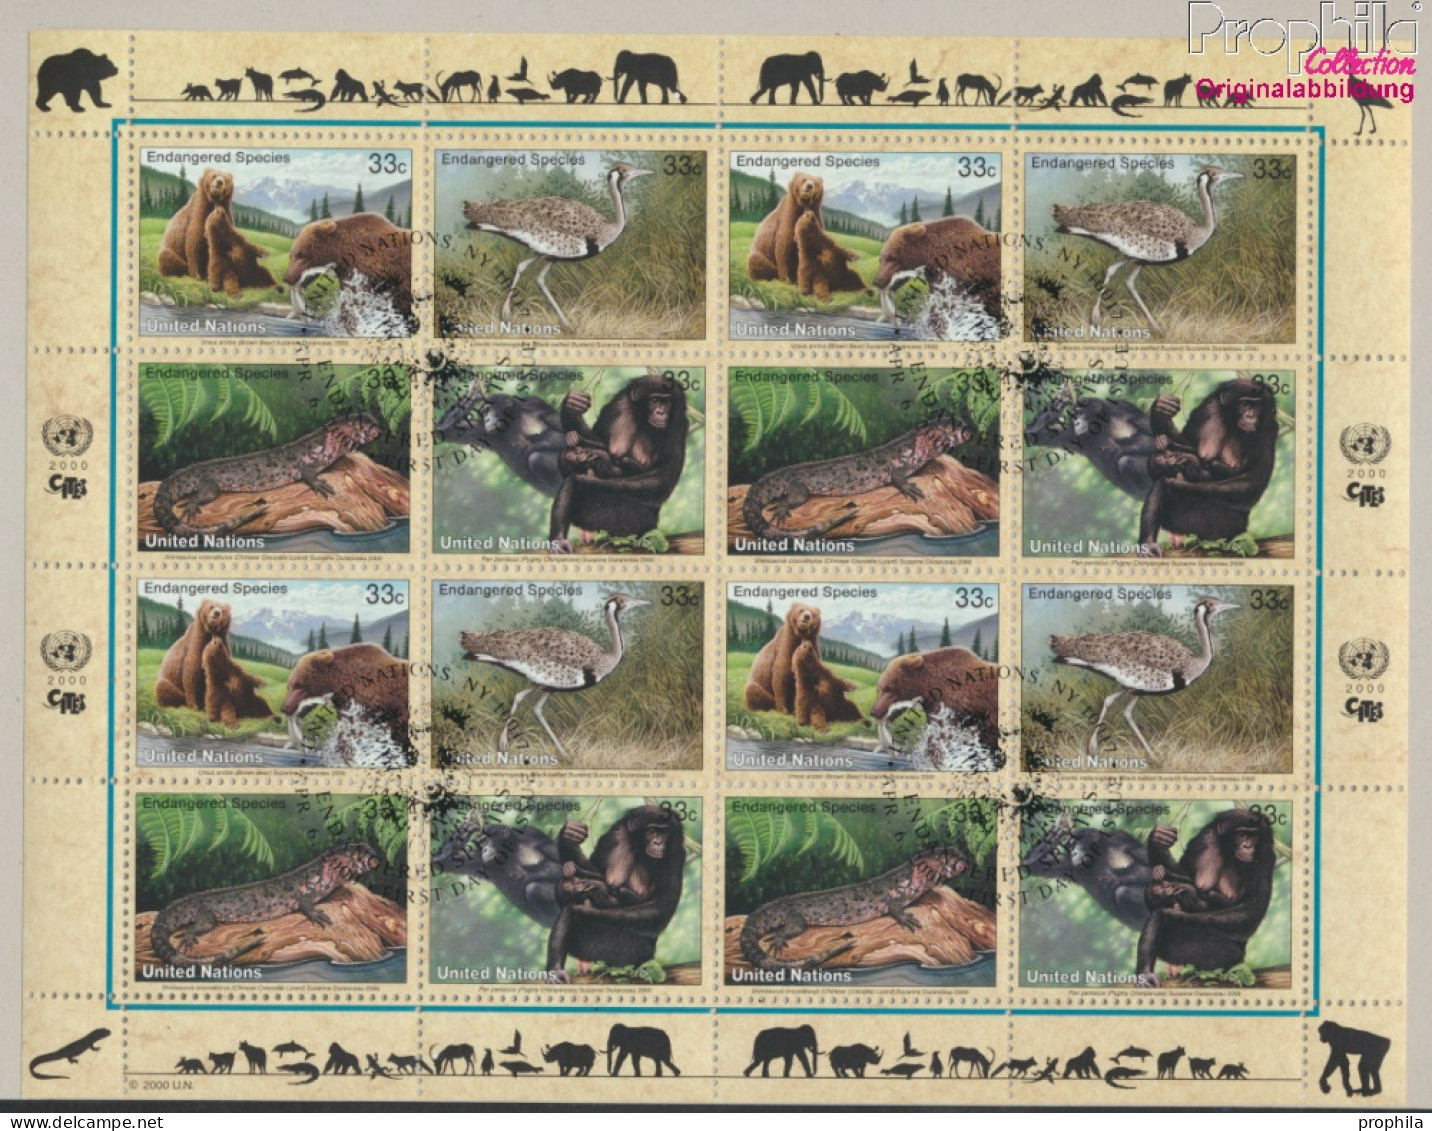 UNO - New York 831-834Klb Kleinbogen (kompl.Ausg.) Gestempelt 2000 Gefährdete Tiere (10050688 - Used Stamps